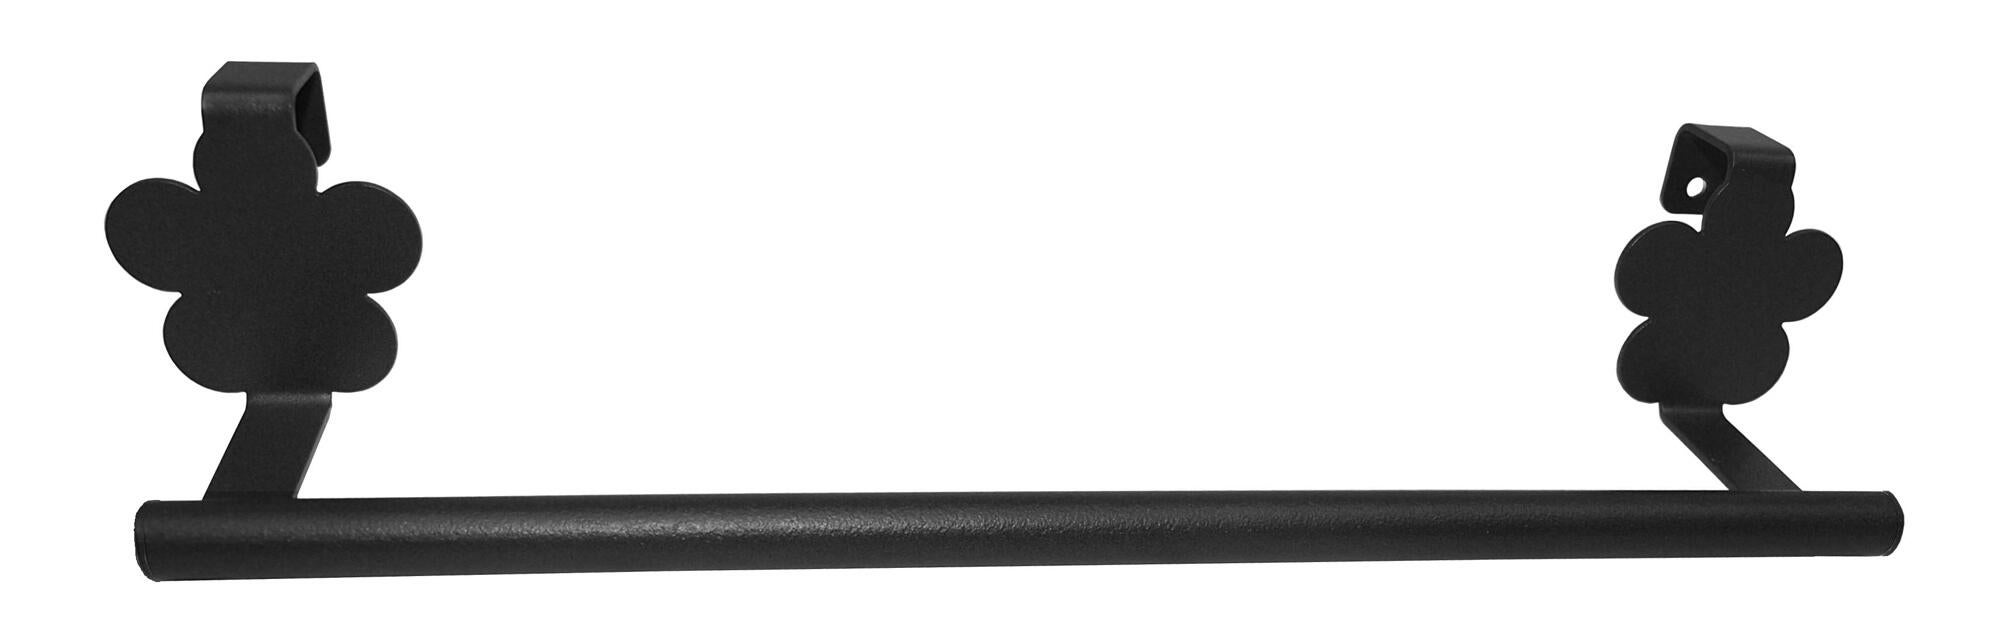 Toallero provenza negro 38.2x6 cm